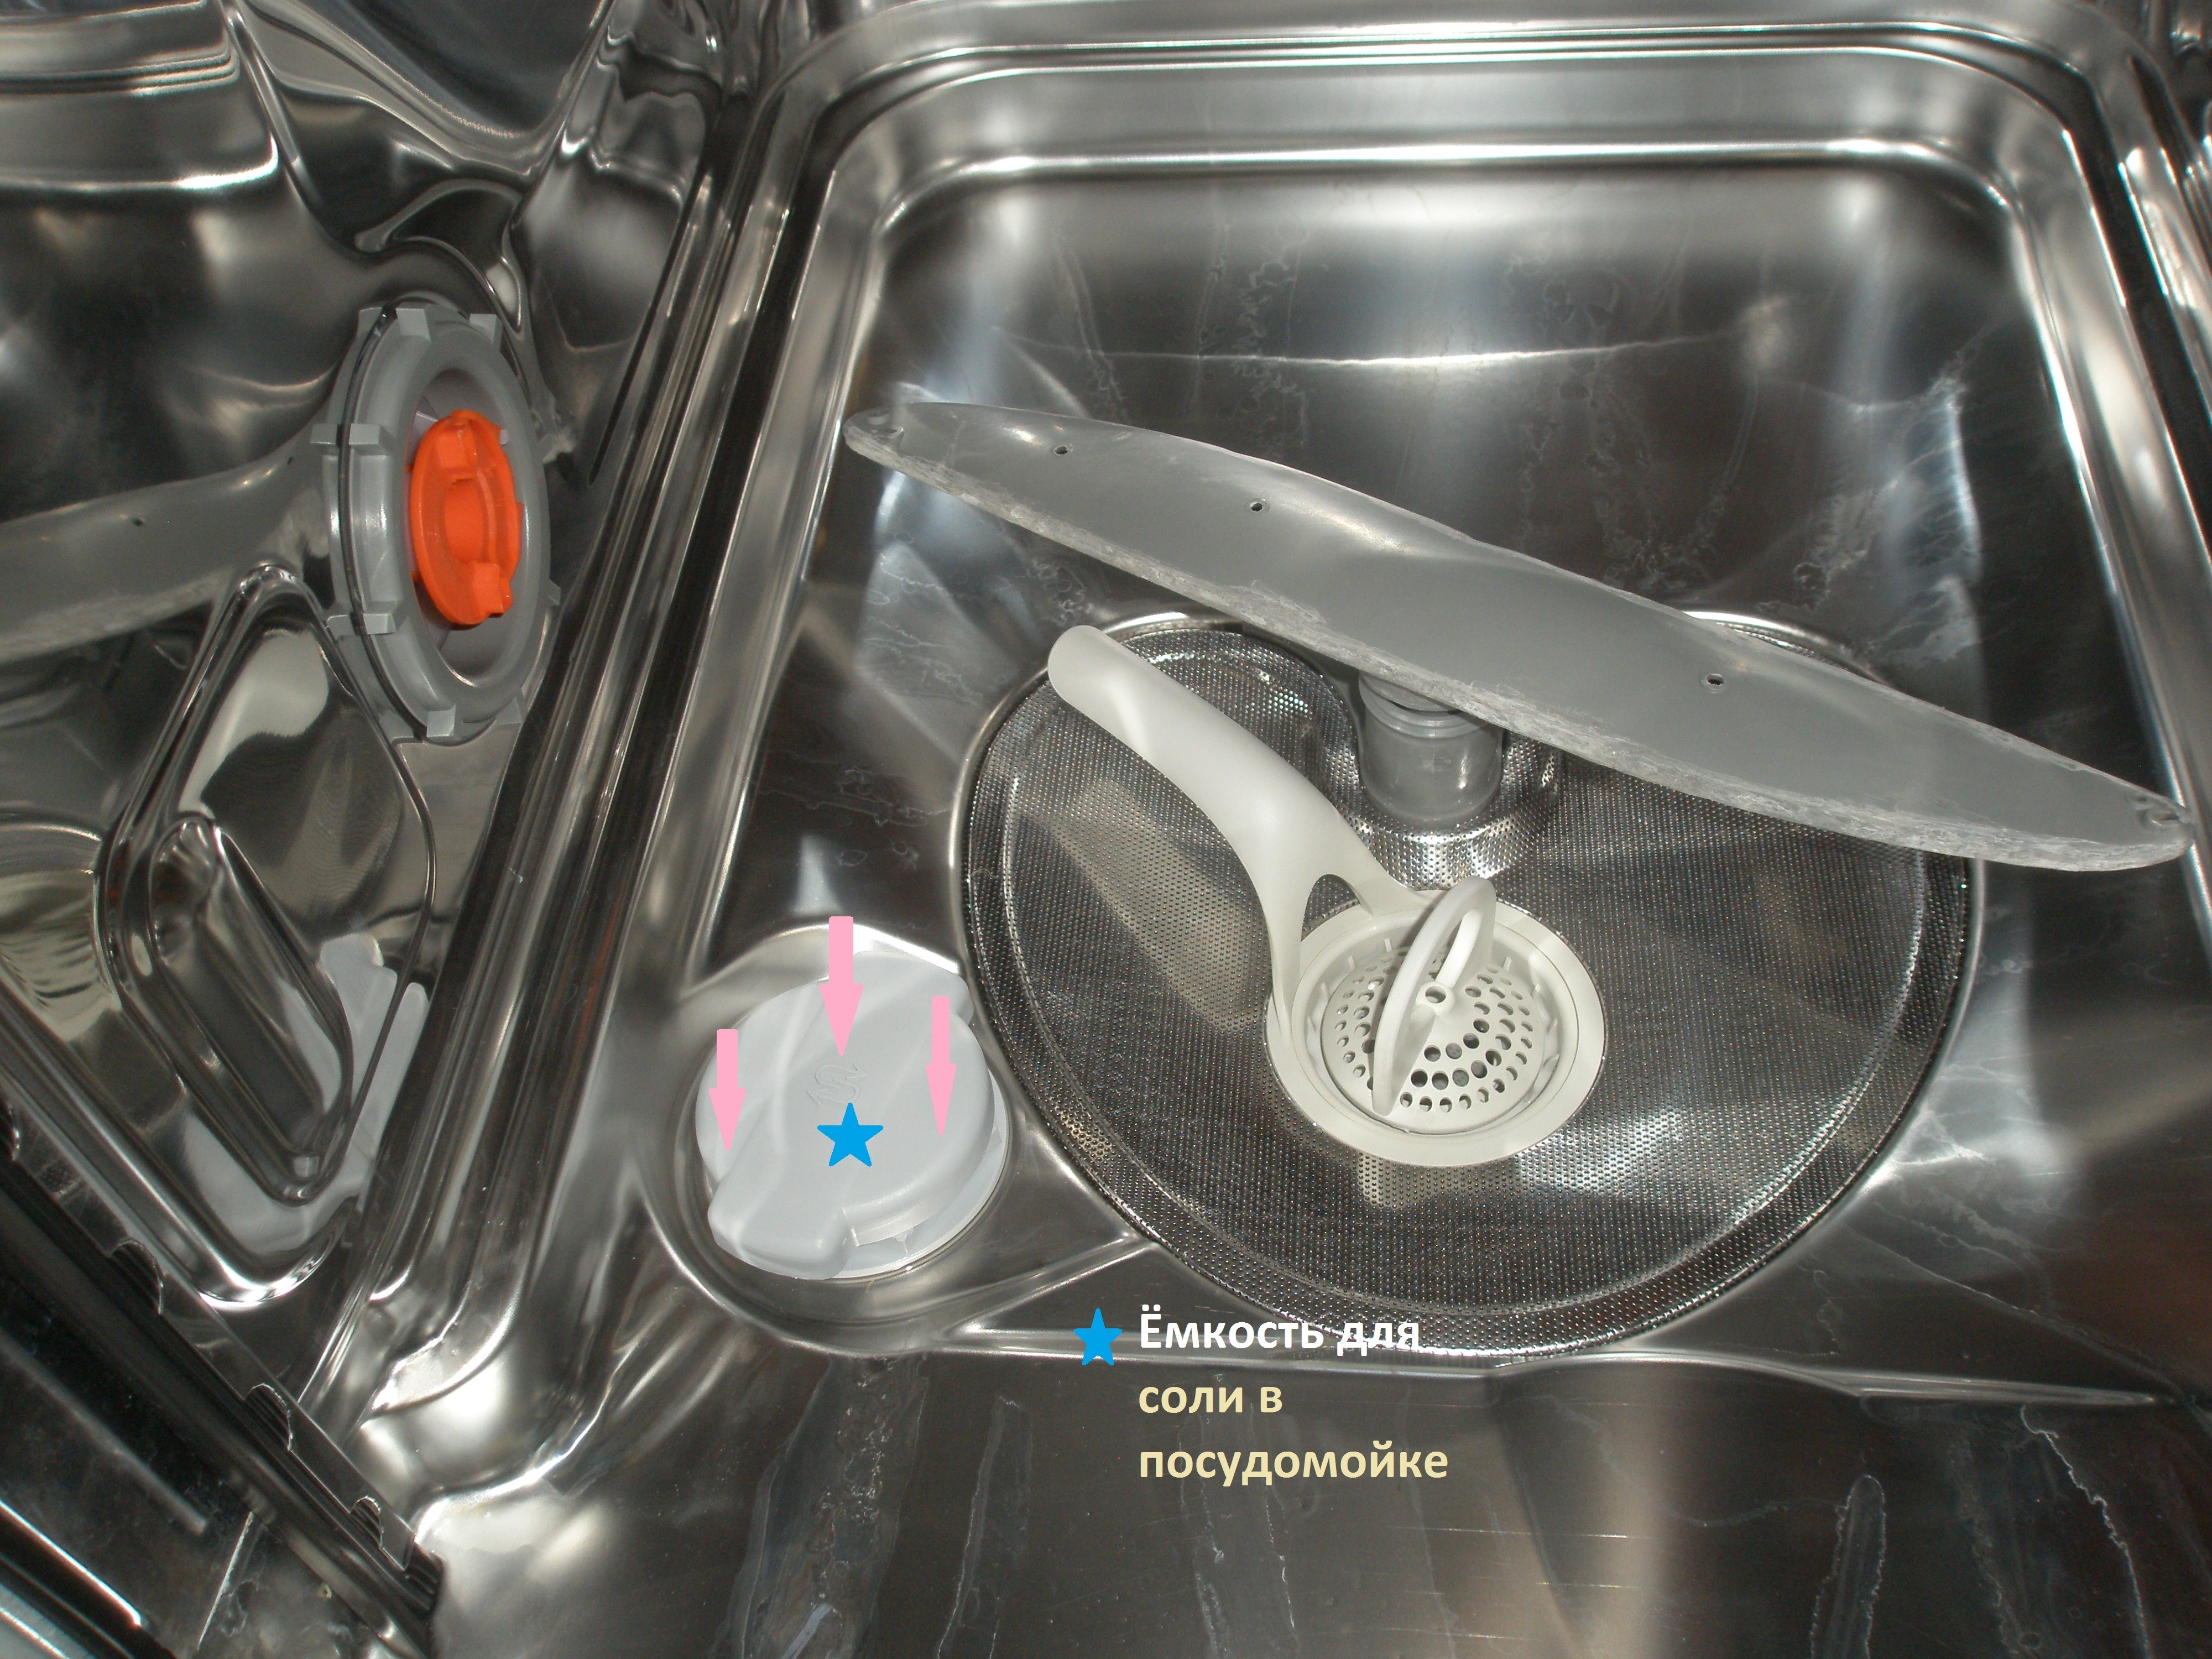 Соль для посудомоечной машины: для чего нужна, как применять + рейтинг производителей